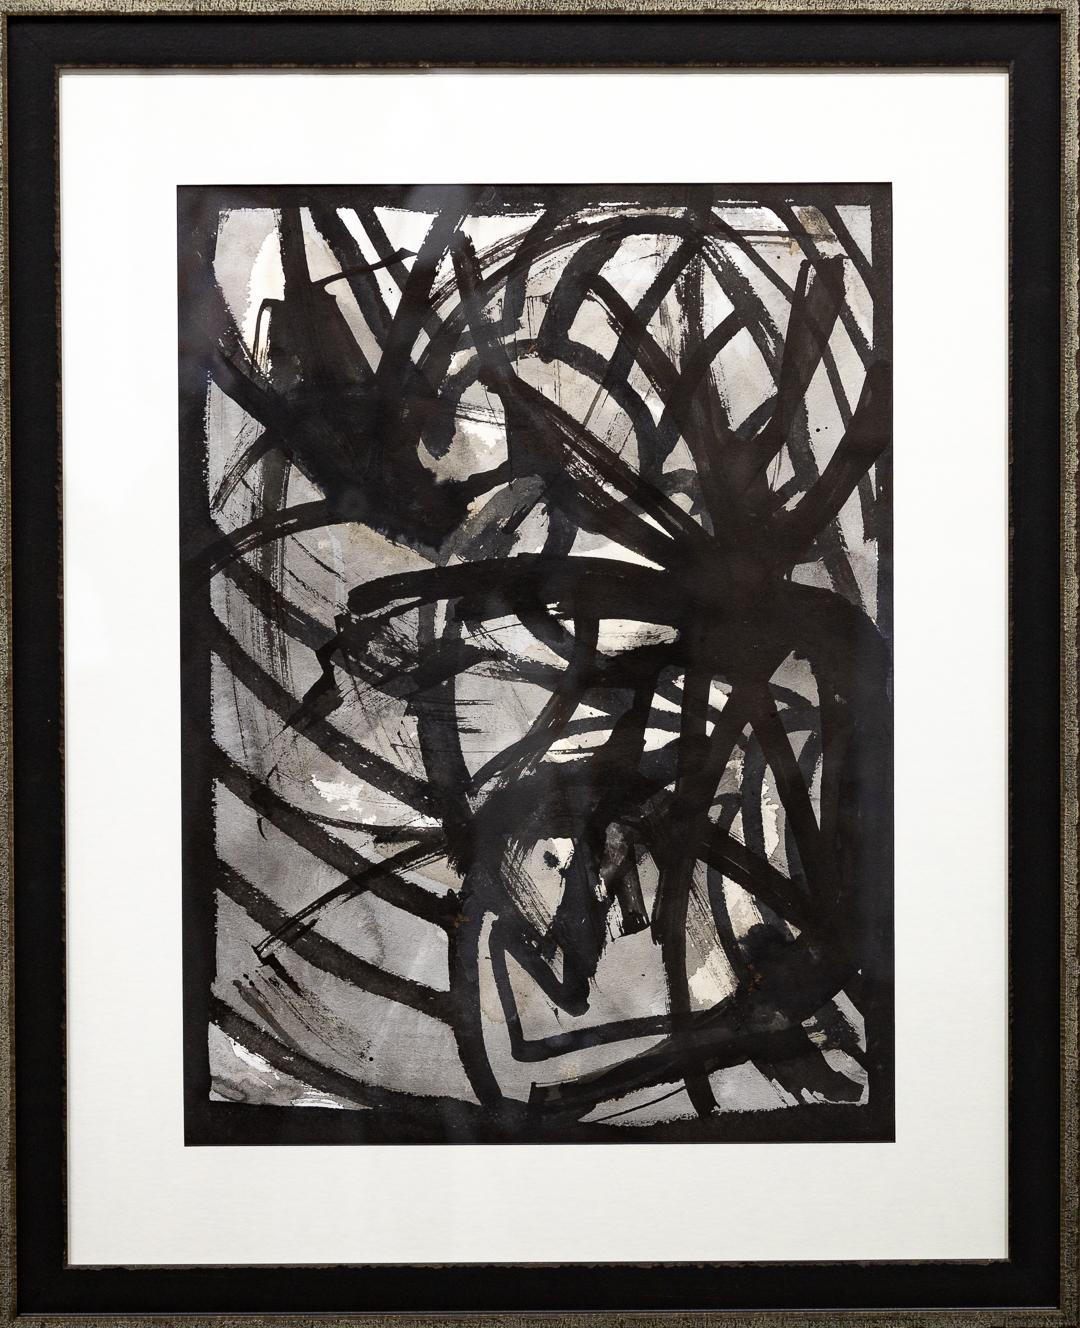 VENTE UNE SEMAINE SEULEMENT

Cette œuvre abstraite monochrome de M. A&M Gardner est une encre sumi sur papier aquarelle qui évoque les sentiments d'un sombre poème américain. L'encre Sumi, également appelée bâtonnets d'encre, est fabriquée